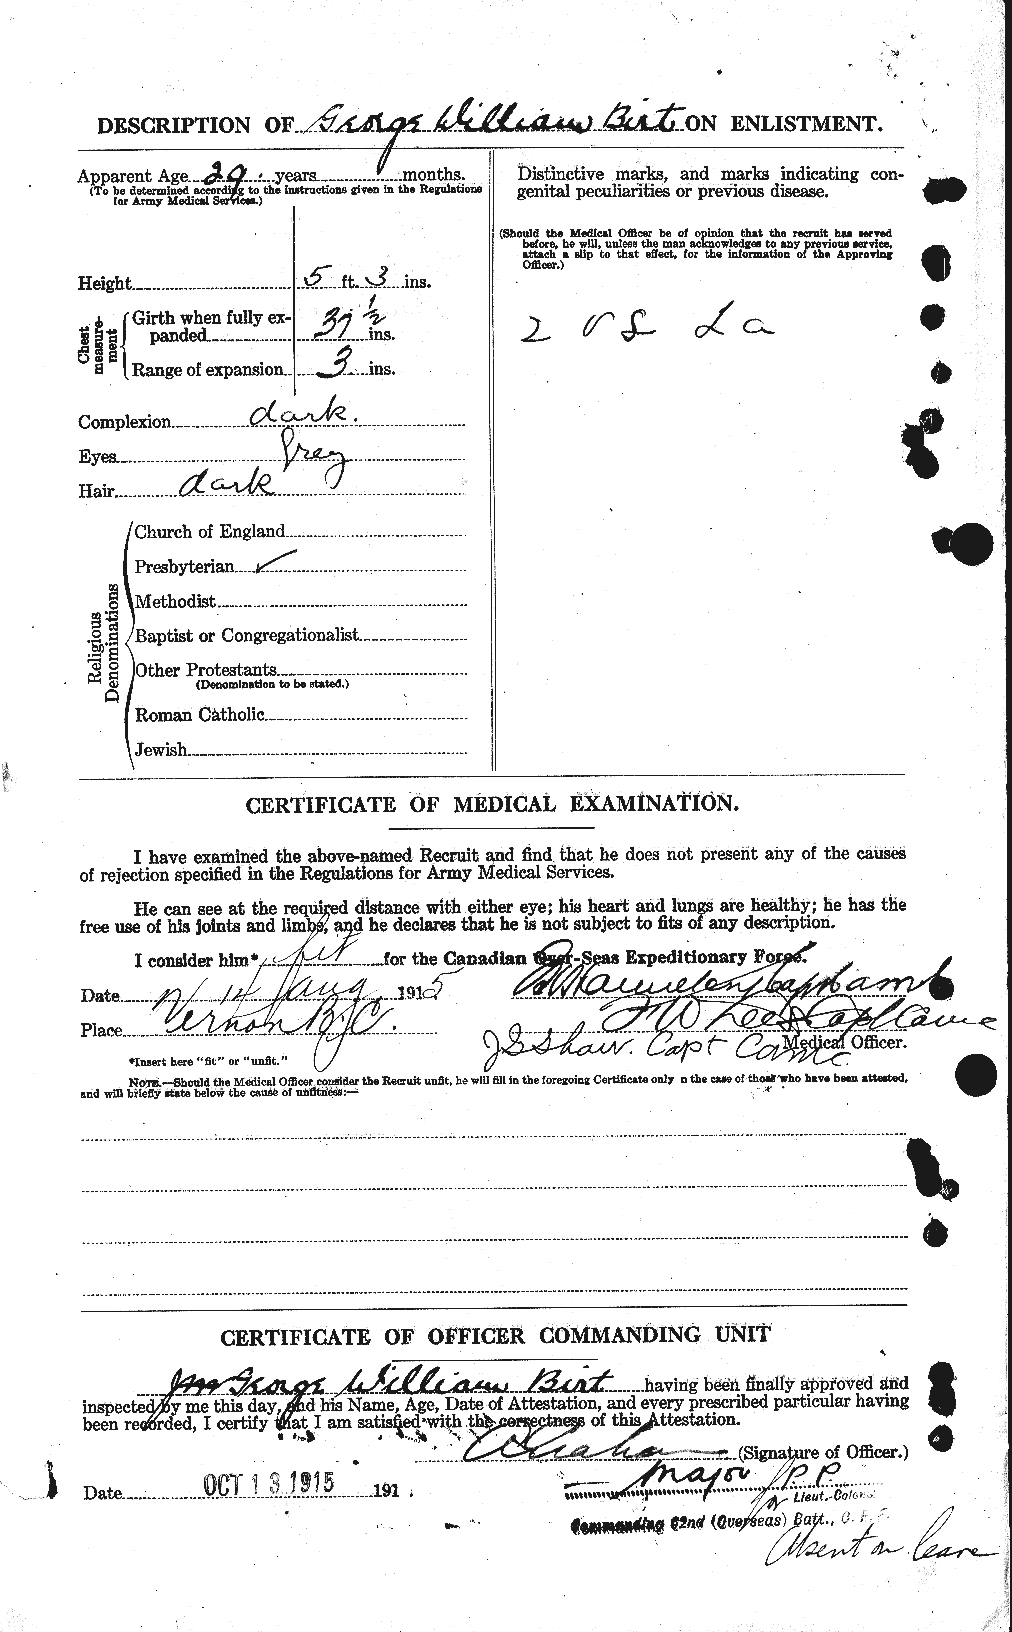 Dossiers du Personnel de la Première Guerre mondiale - CEC 244059b